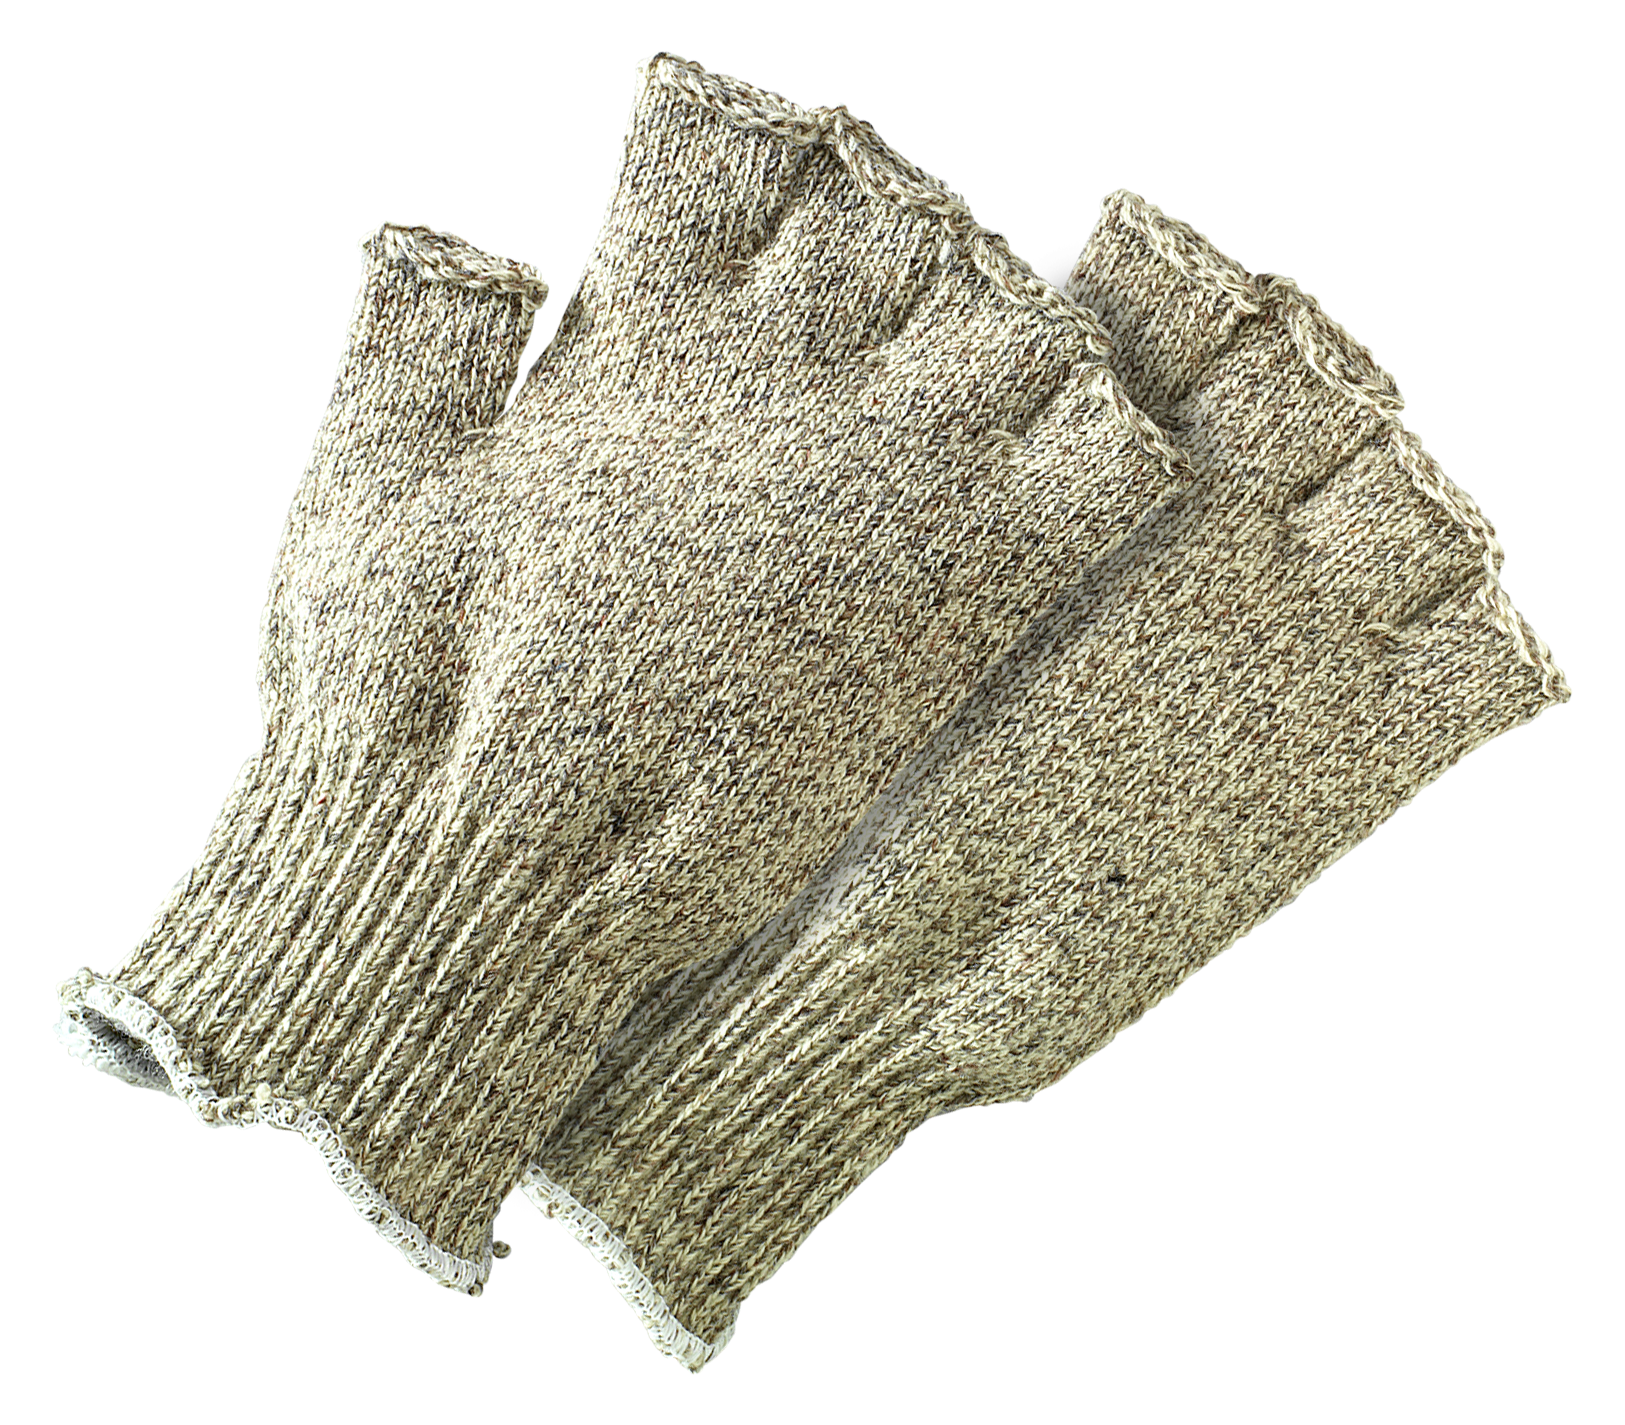 Fingerless Ragg Wool Fly Fishing Gloves for Men